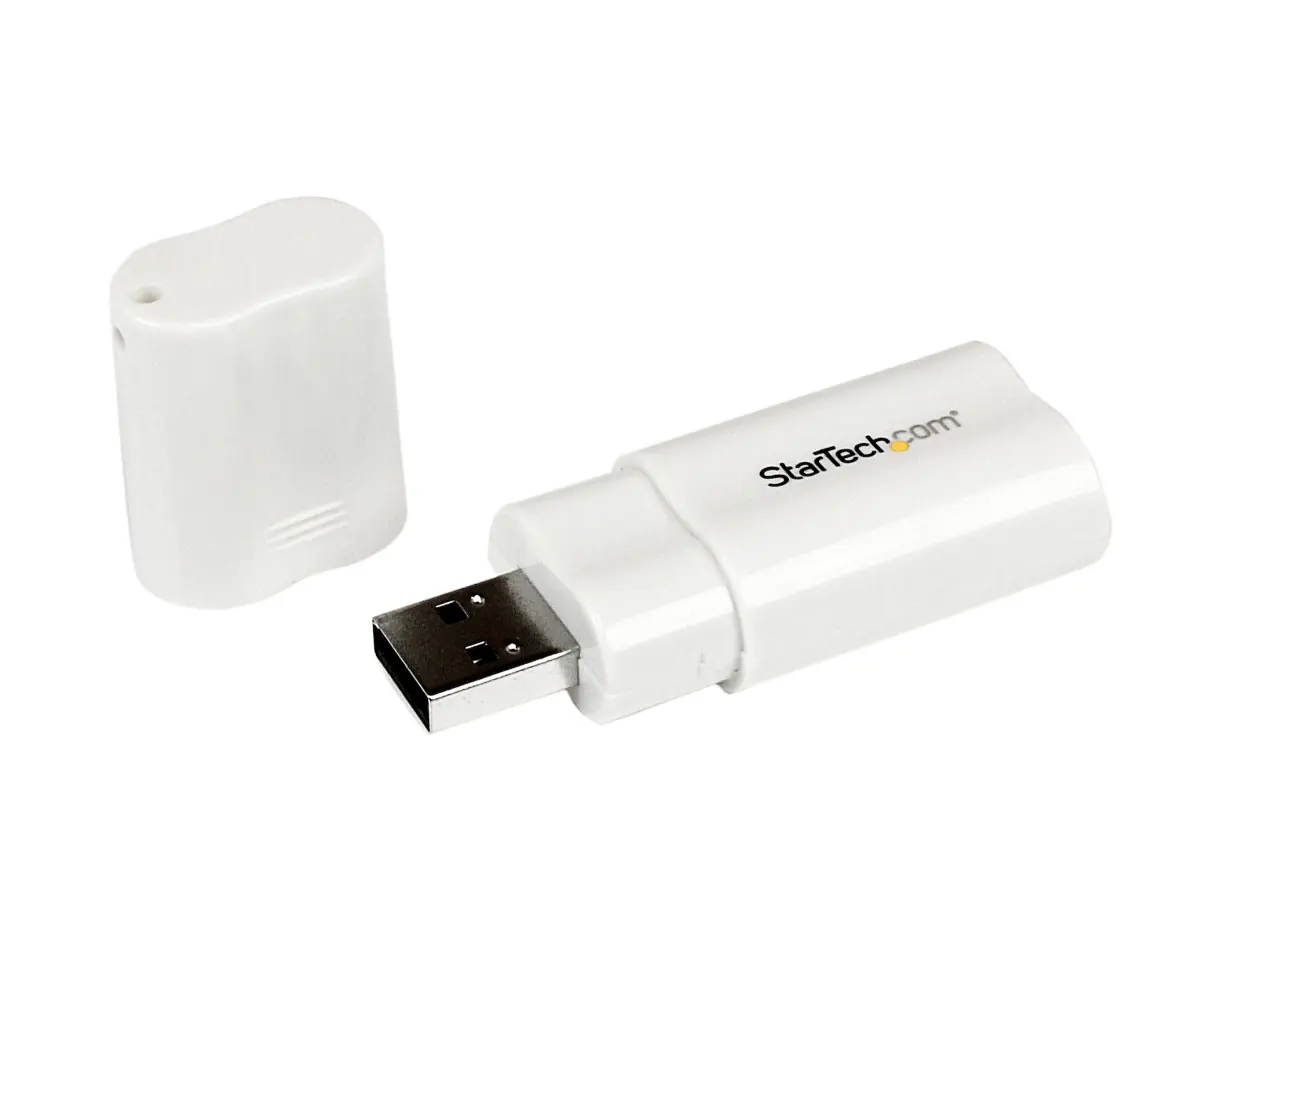 الأكثر مبيعًا Startech Dongle صوت USB أبيض لأغراض نقل الصوت من الشركة المصنعة لدينا بأفضل الأسعار